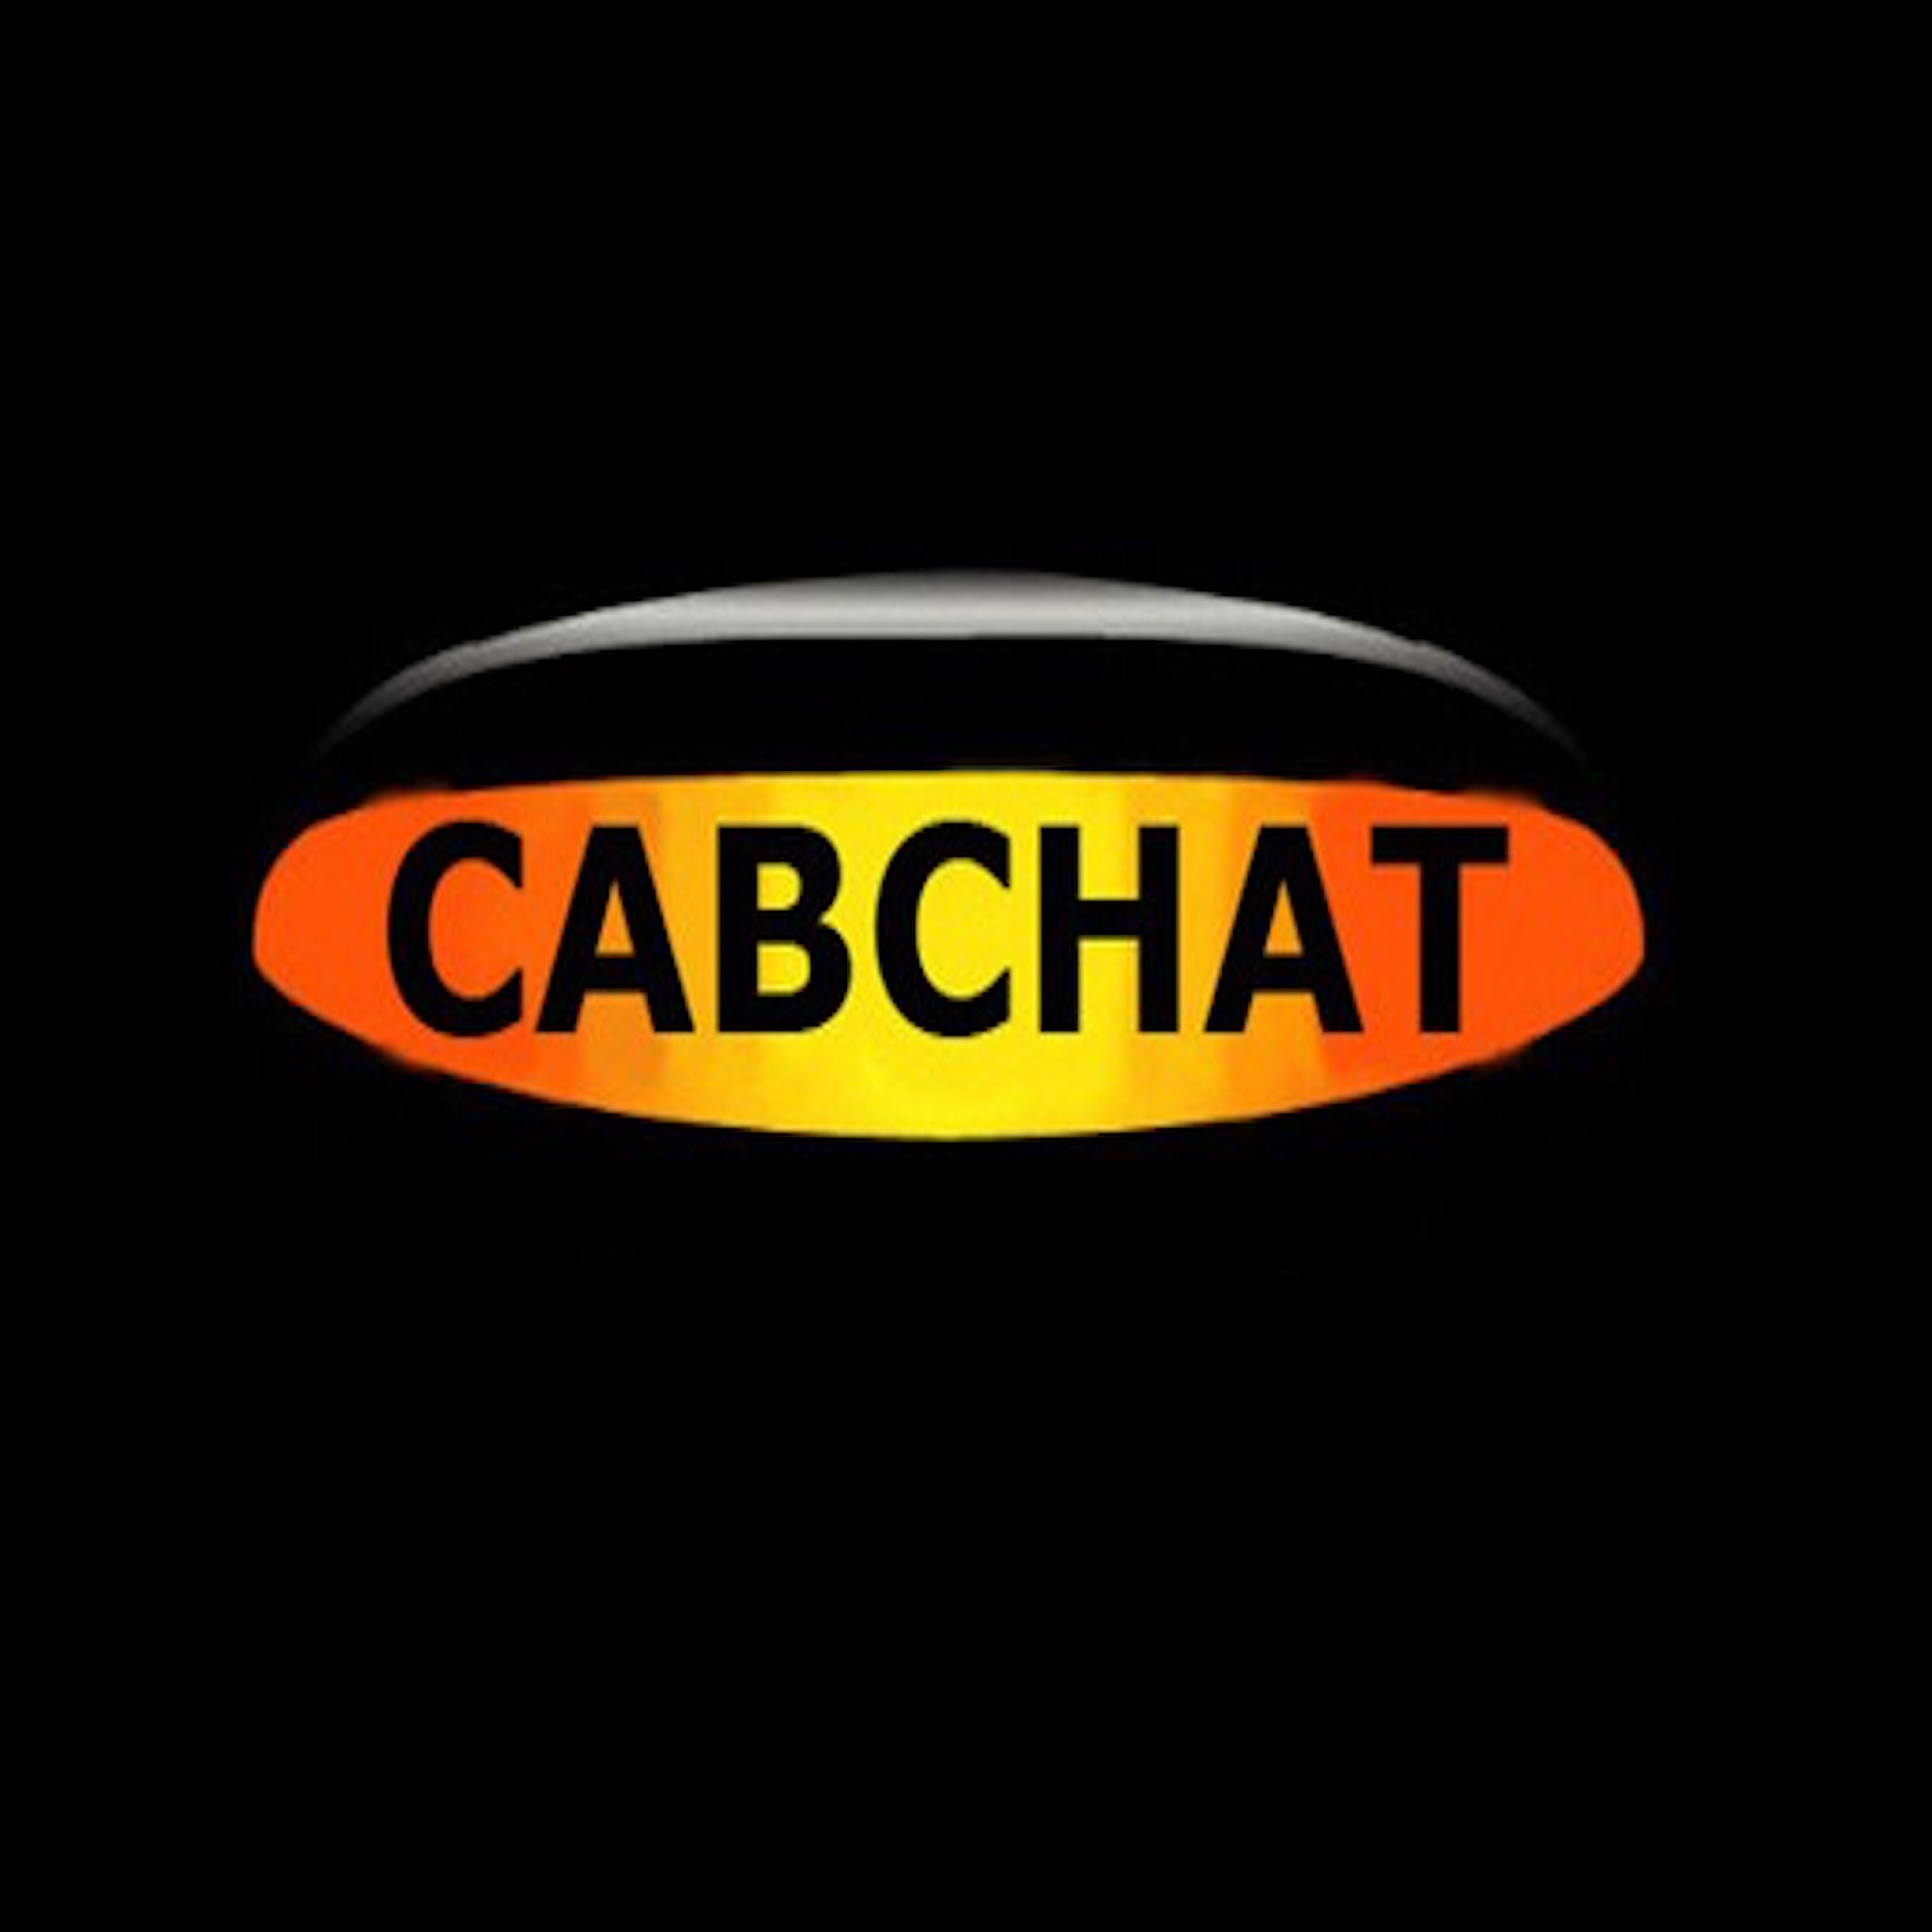 Cab Chat Radio Show